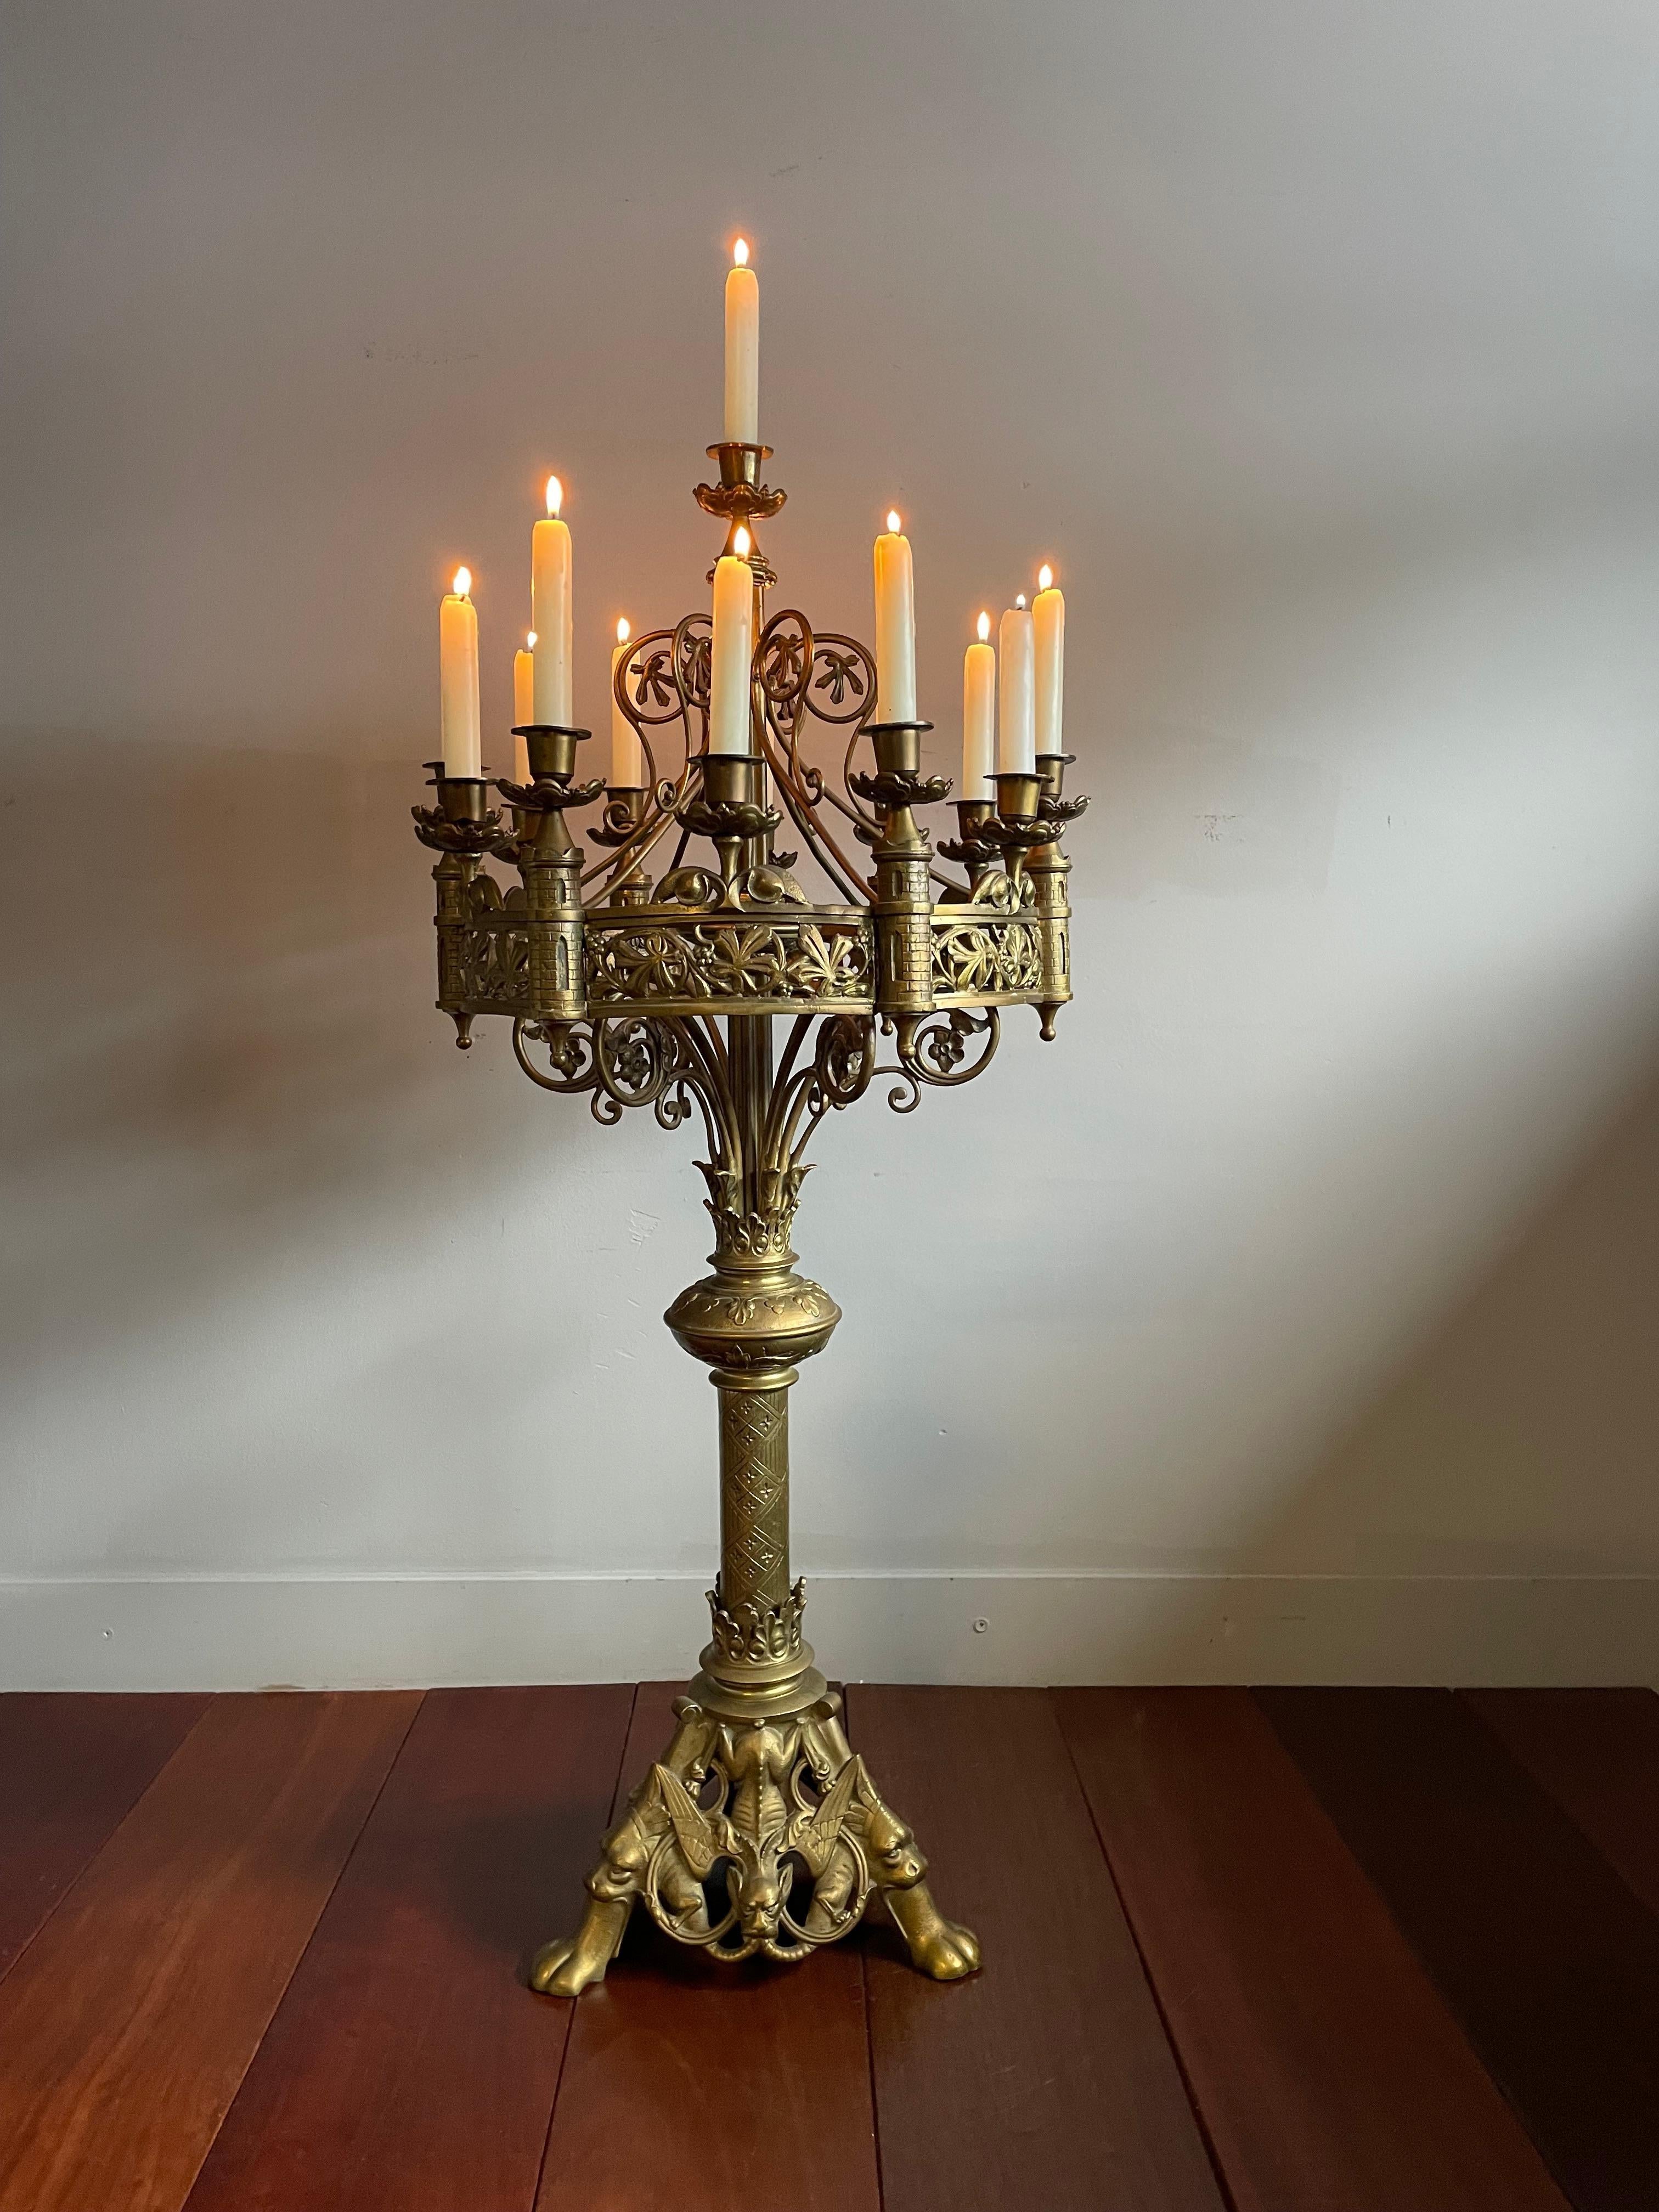 Seltener und bedeutungsvoller, 3 Fuß hoher, gotischer Bodenkerzenhalter aus Bronze für dreizehn Kerzen.

Dieser antike Altar- oder Bodenleuchter für dreizehn Kerzen im Stil der Gotik gehört zu den Antiquitäten, bei denen man sofort merkt, dass sie